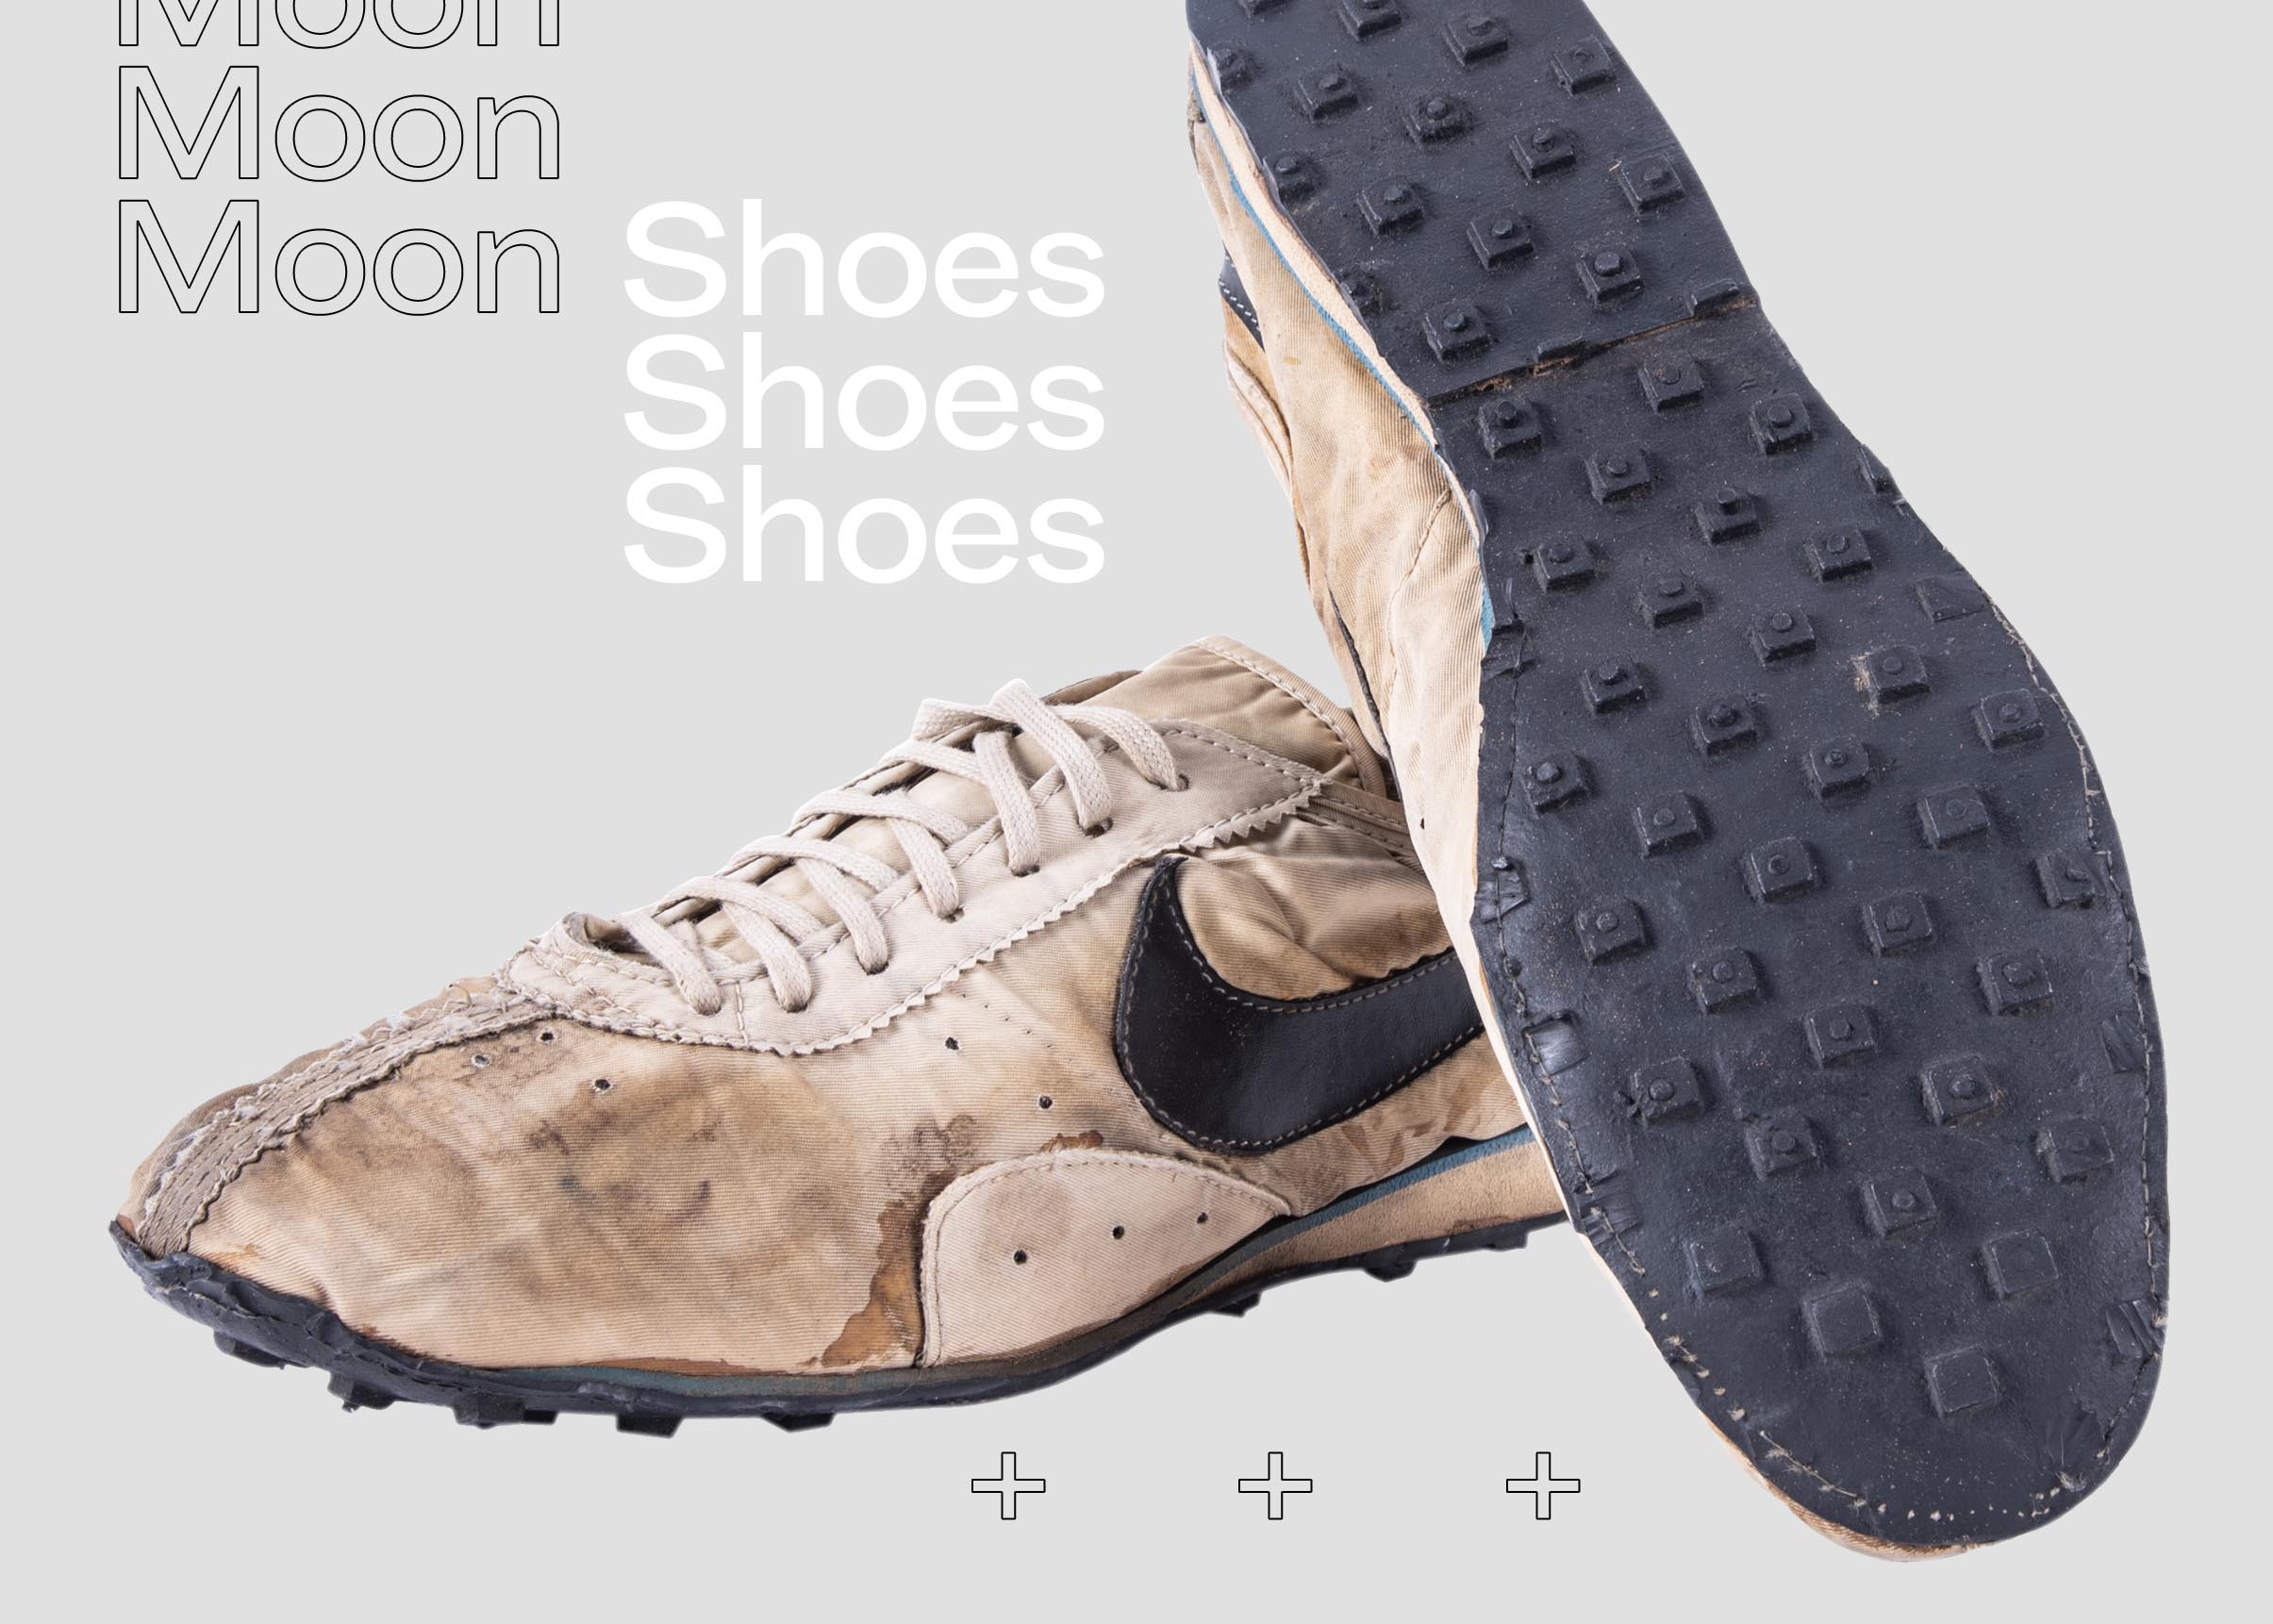 Nike Moon Shoes